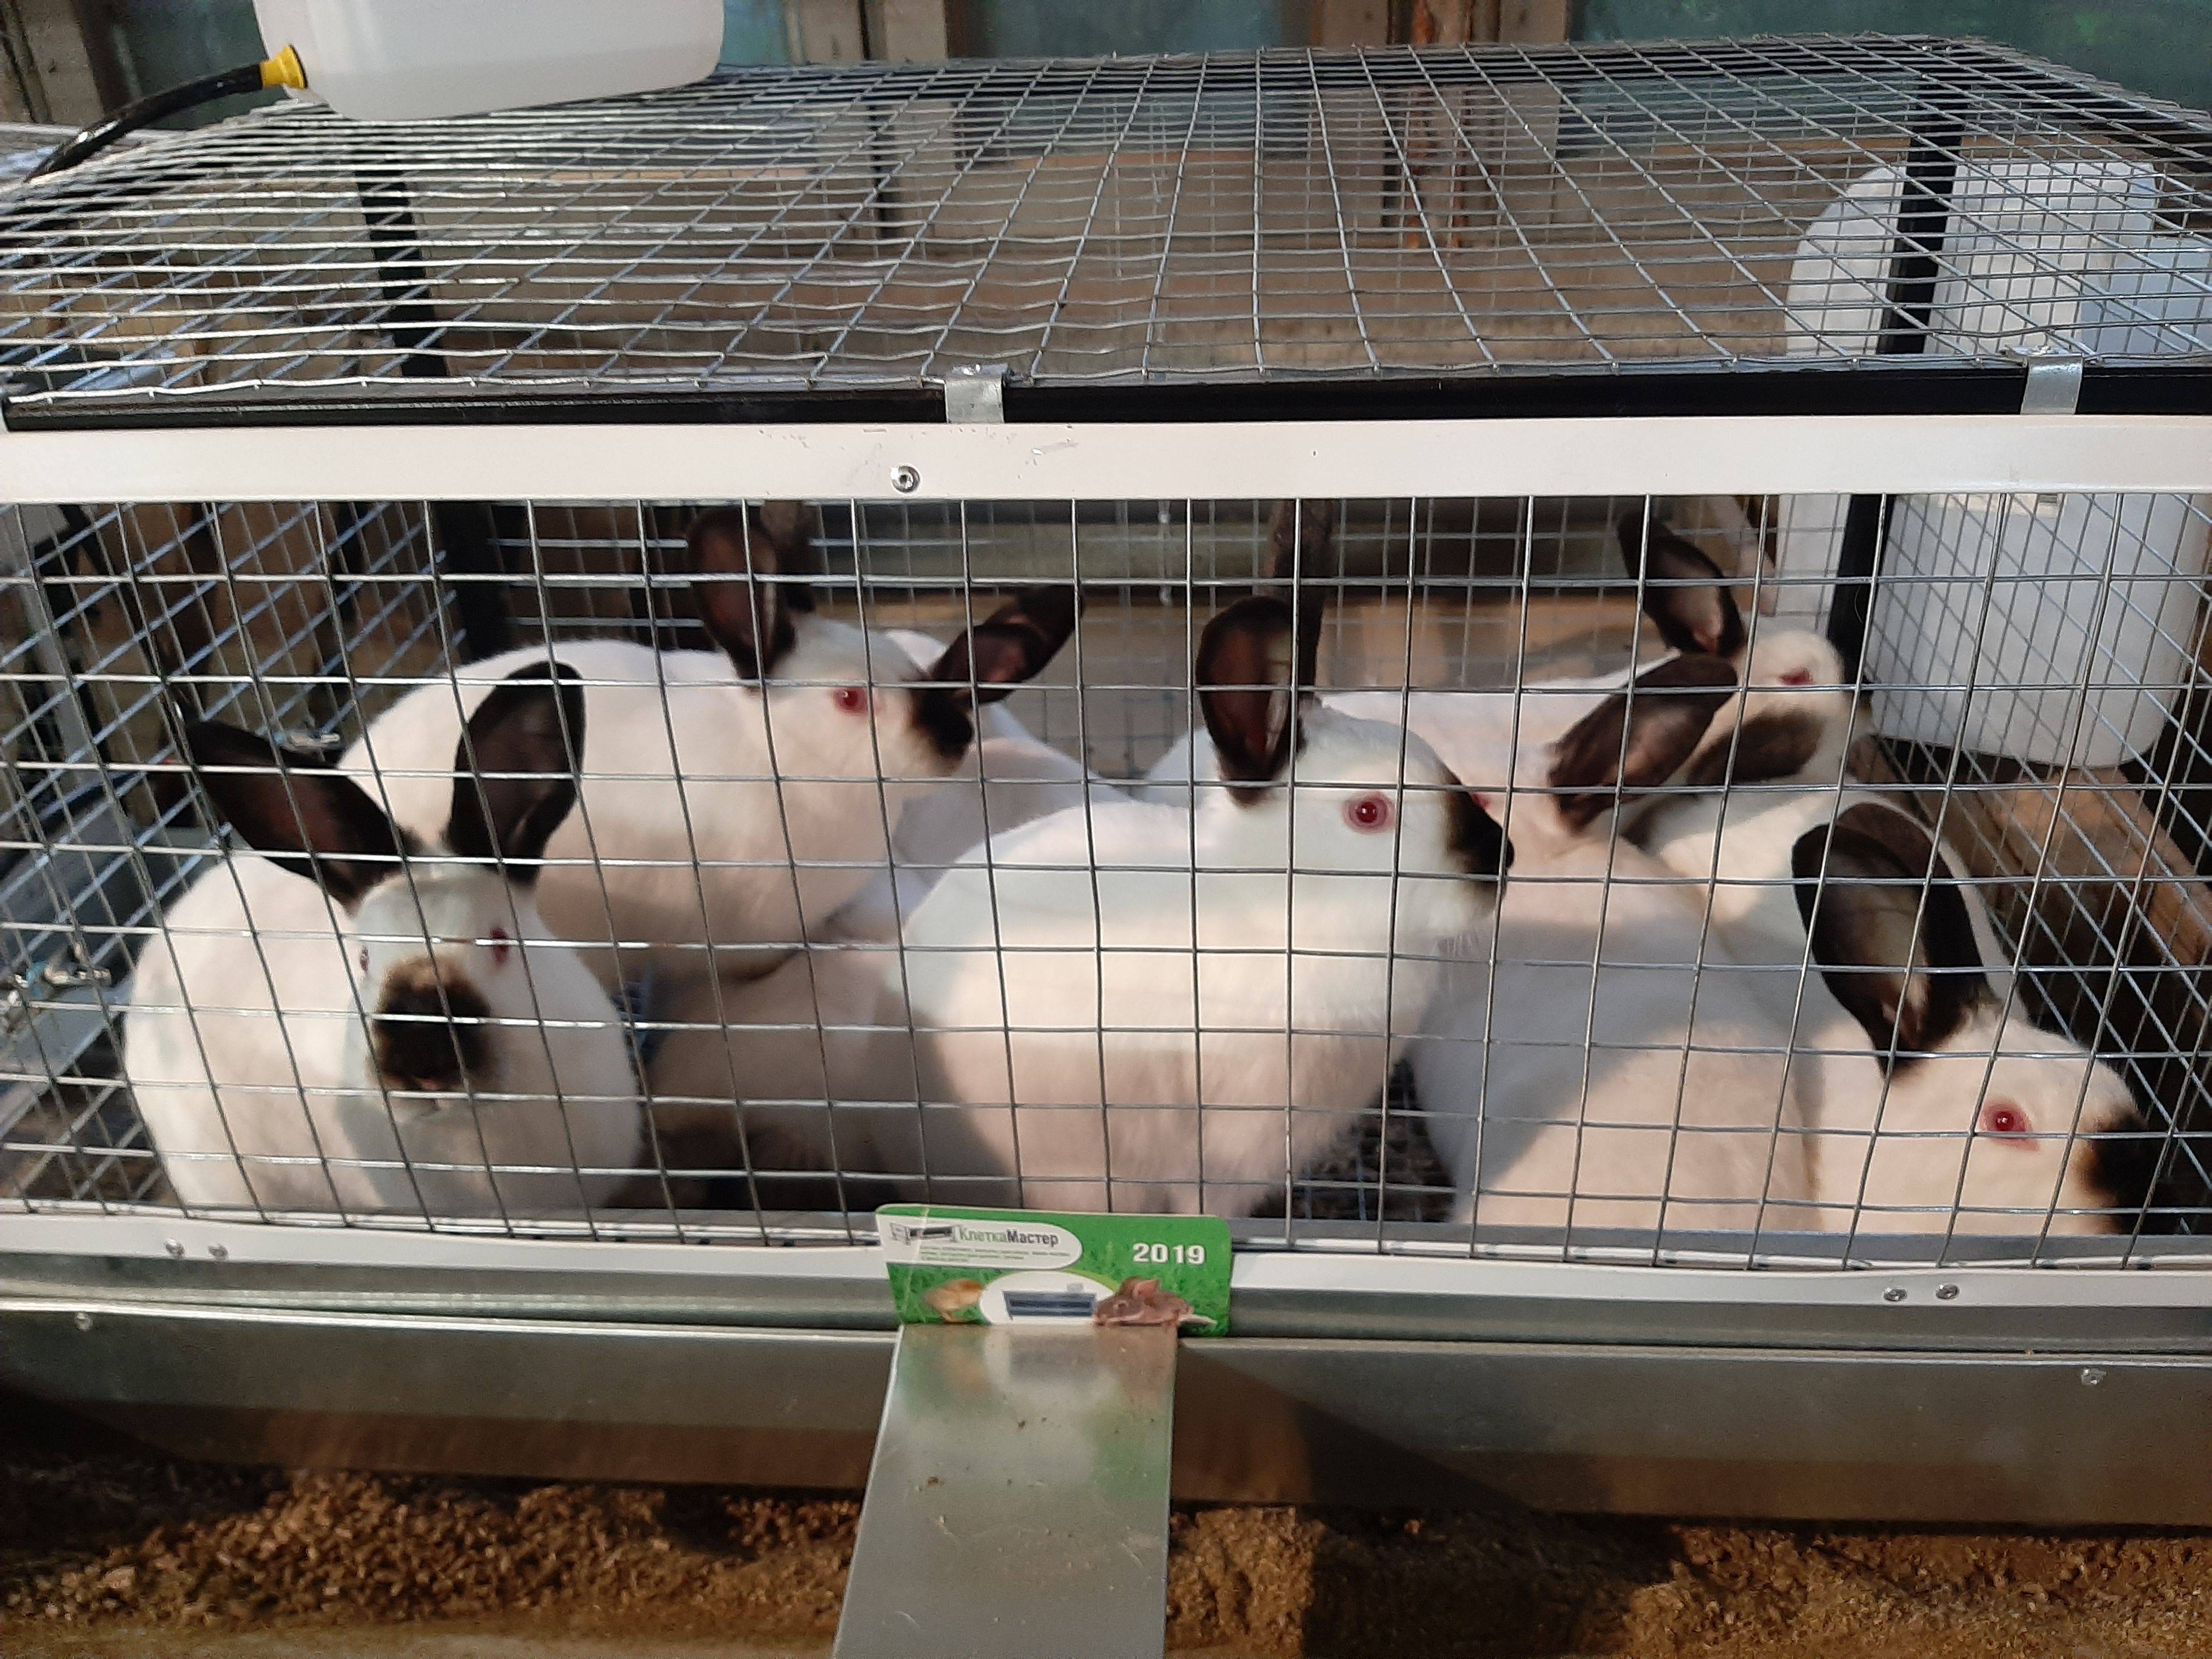 Разведение кроликов как бизнес выгодно или нет? можно просто во дворе?